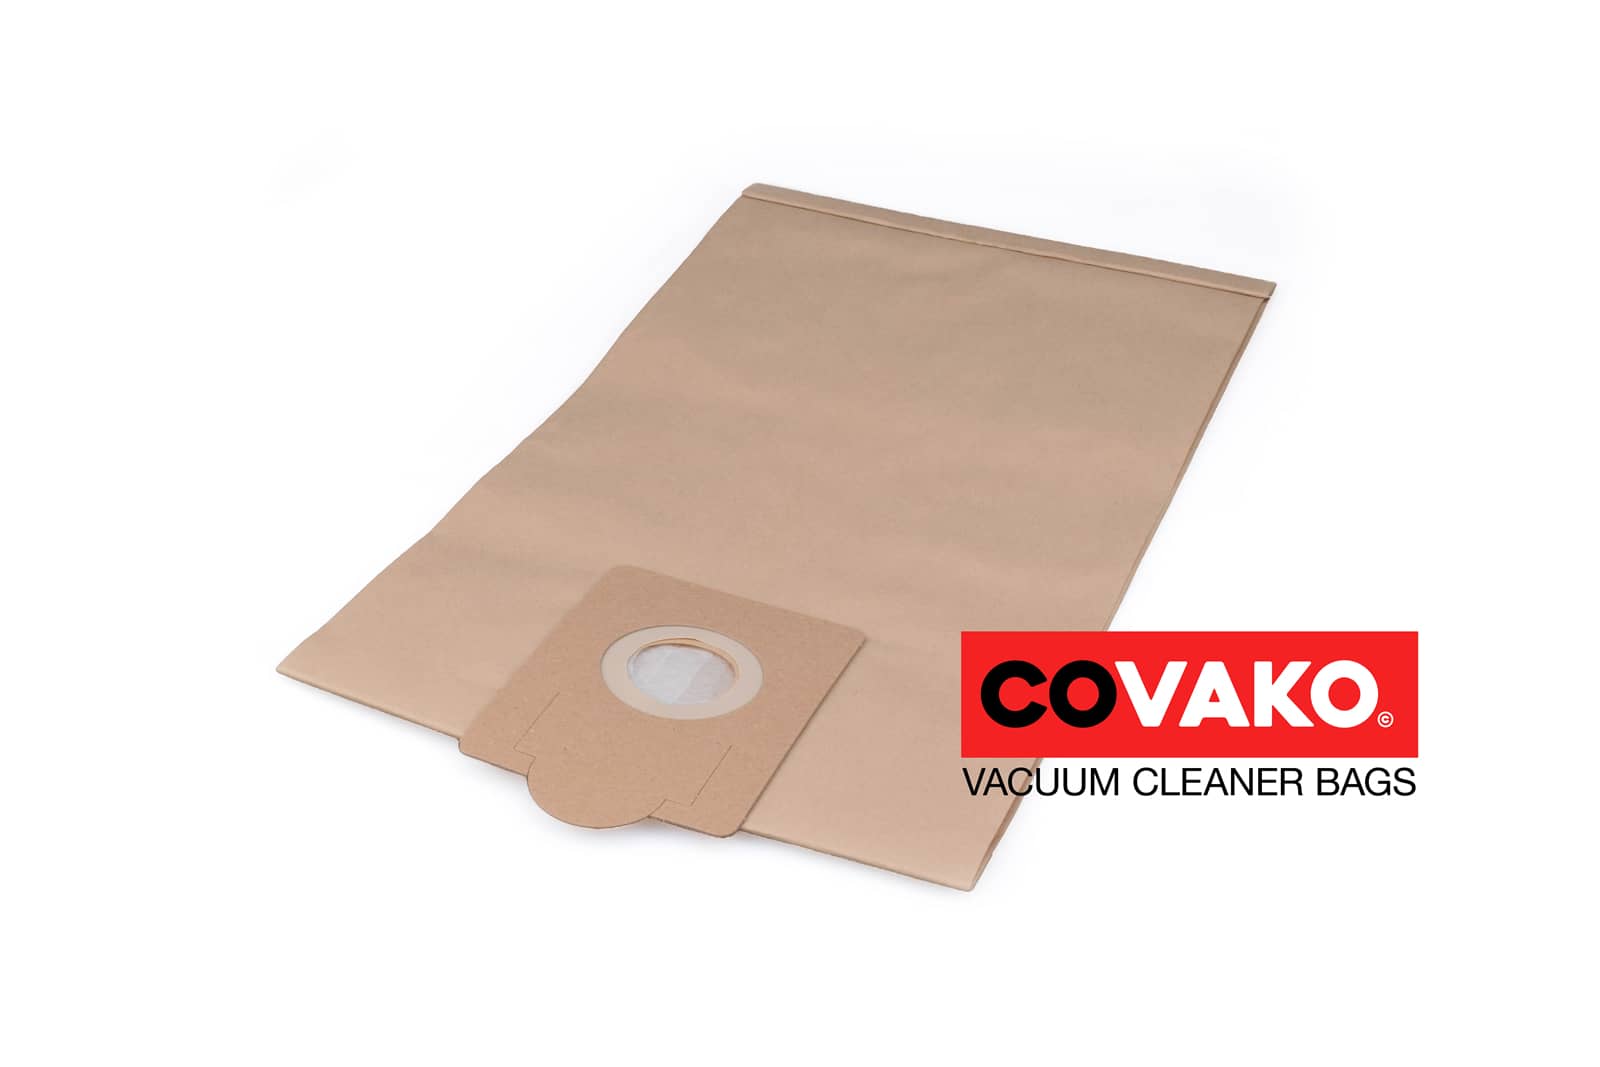 Fakir S 68 / Paper - Fakir vacuum cleaner bags